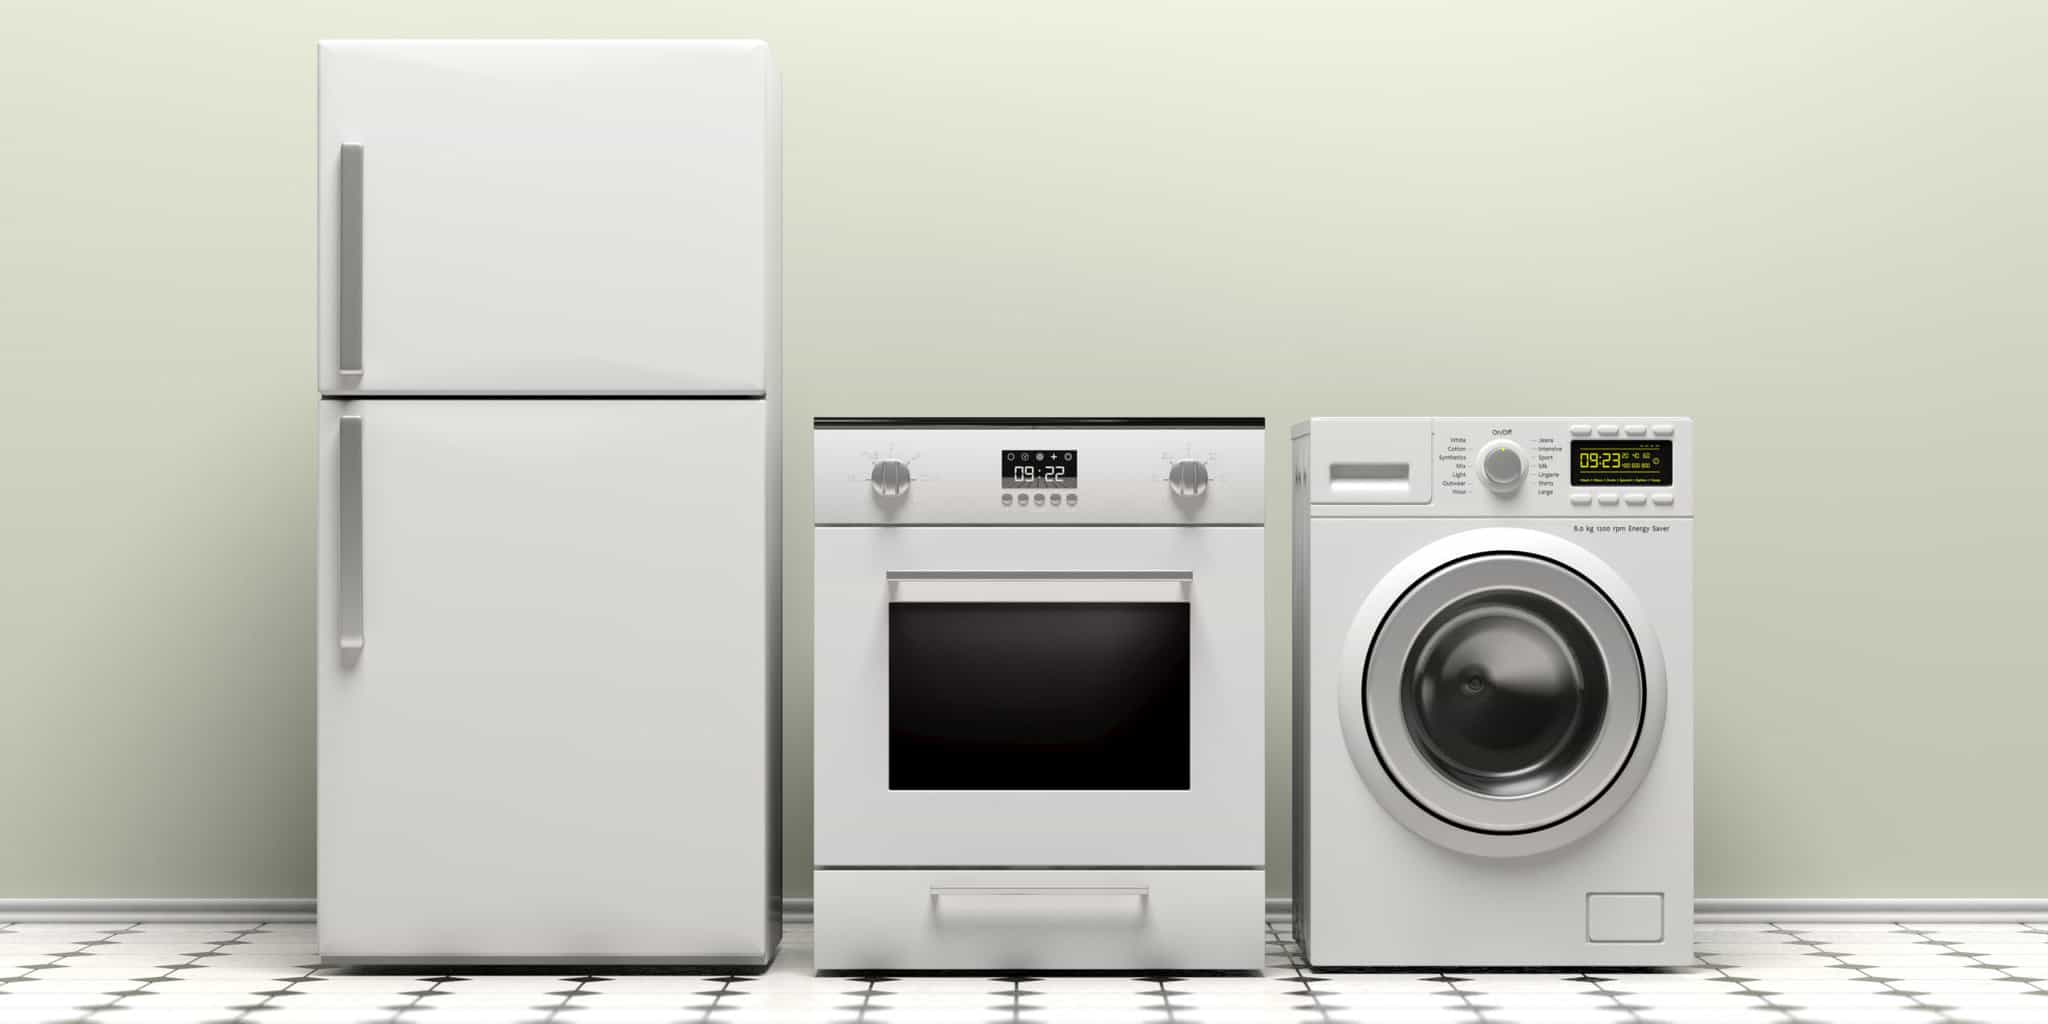 DORM / MINI FRIDGE FOR SALE - appliances - by owner - sale - craigslist